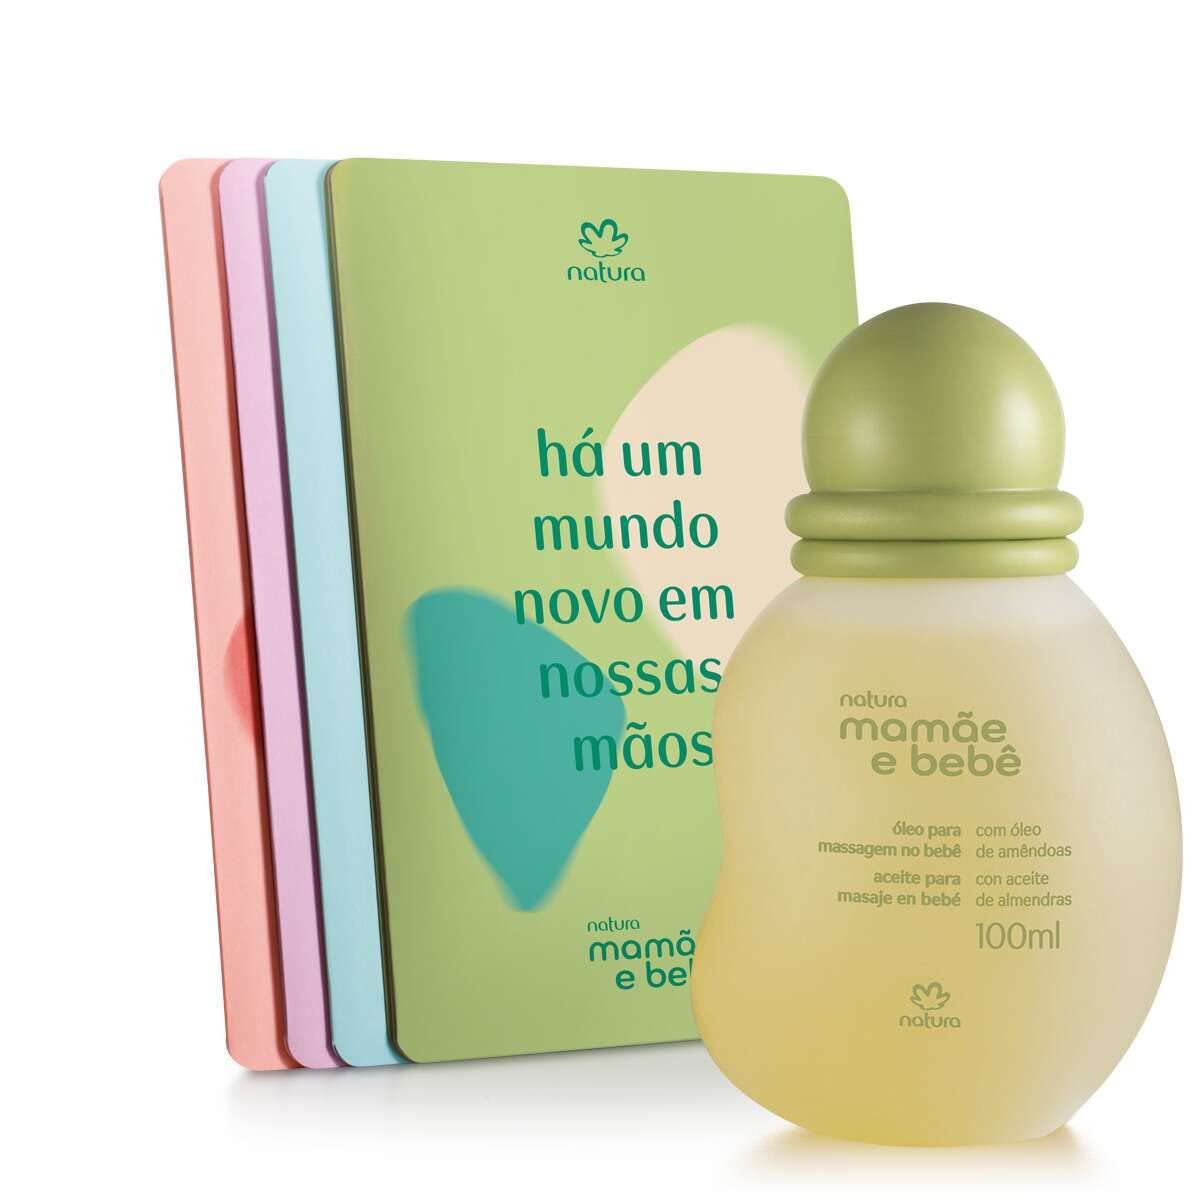 Natura - Linha Mamae e Bebe - Oleo Para Massagem no Bebe 100 Ml - (Natura - Mom & Baby Collection - Baby Massage Oil 3.38 Fl Oz)